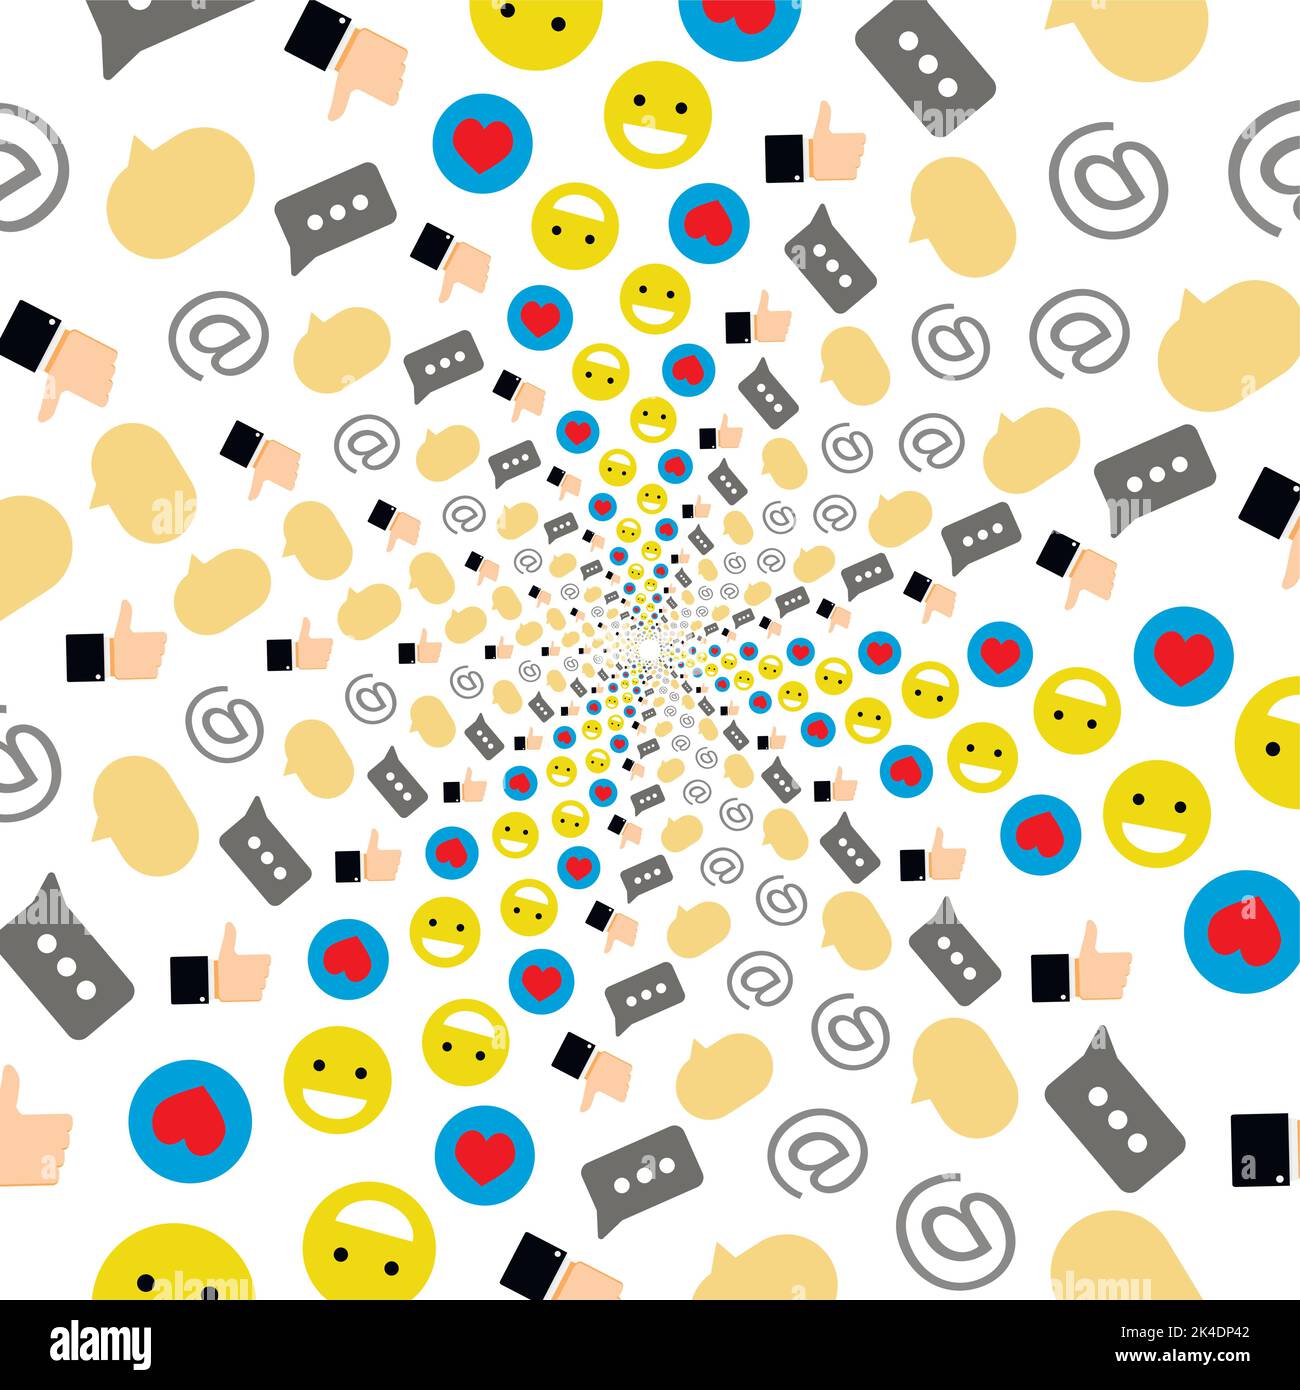 Social-Media-Welt, virtueller Raum zur Kommunikation. Vektorgrafik. Abstrakte Erdkommunikation, kreatives Zeichen, Emoji-Gemeinschaft, wie Konzept, SoC Stock Vektor